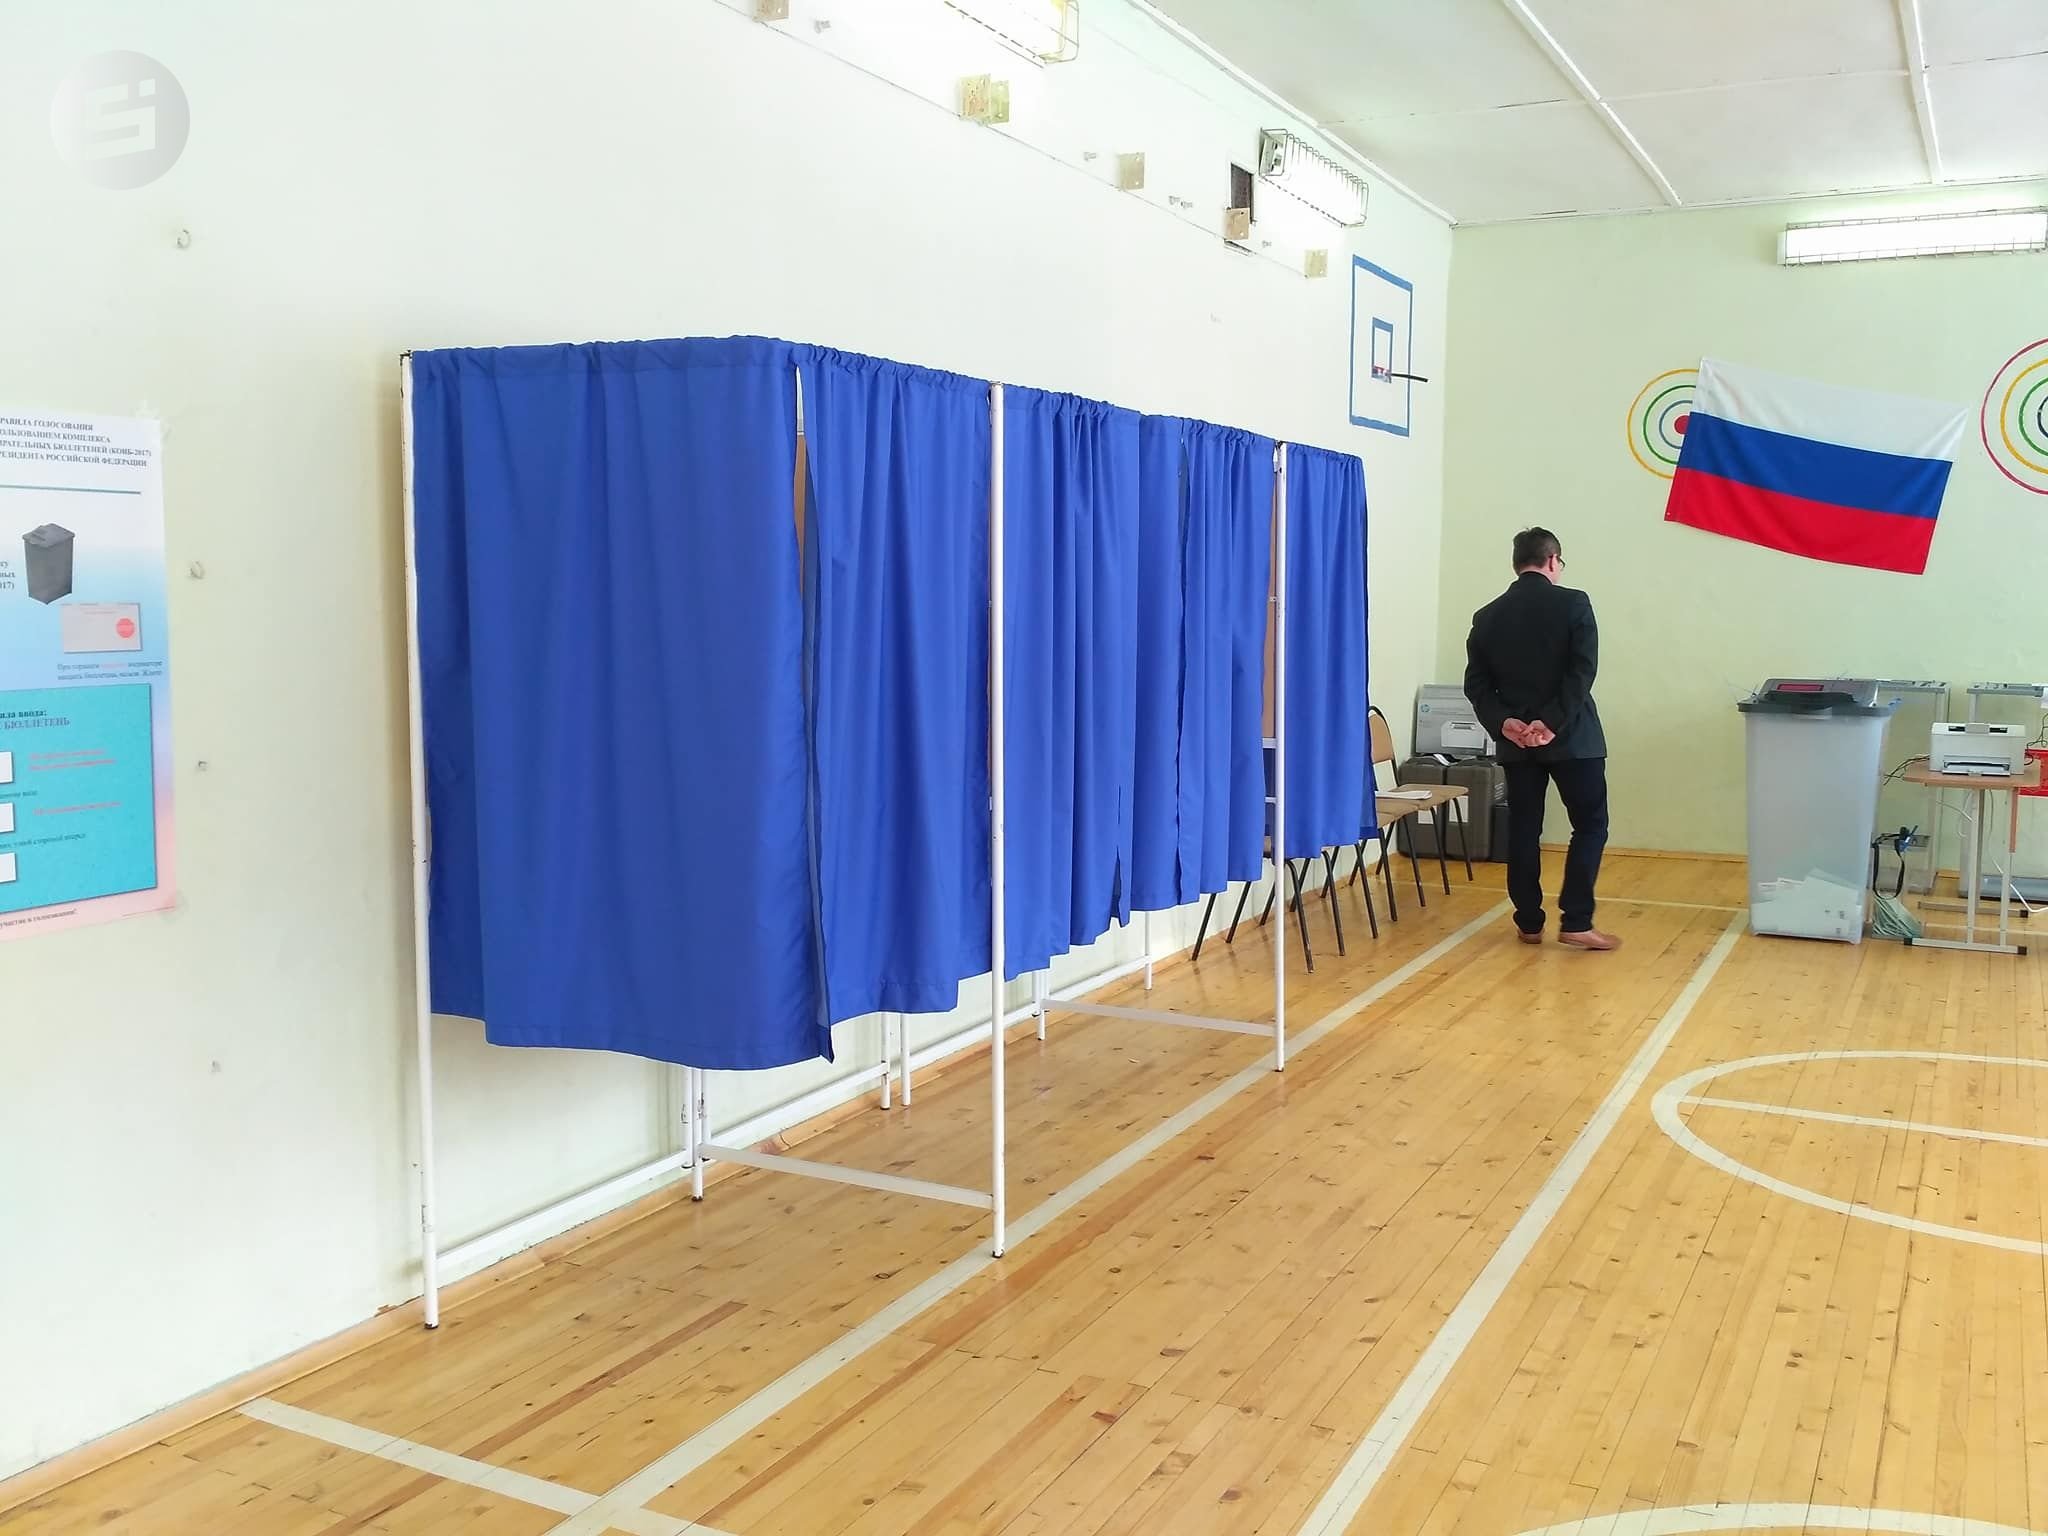 Выборы в воткинске